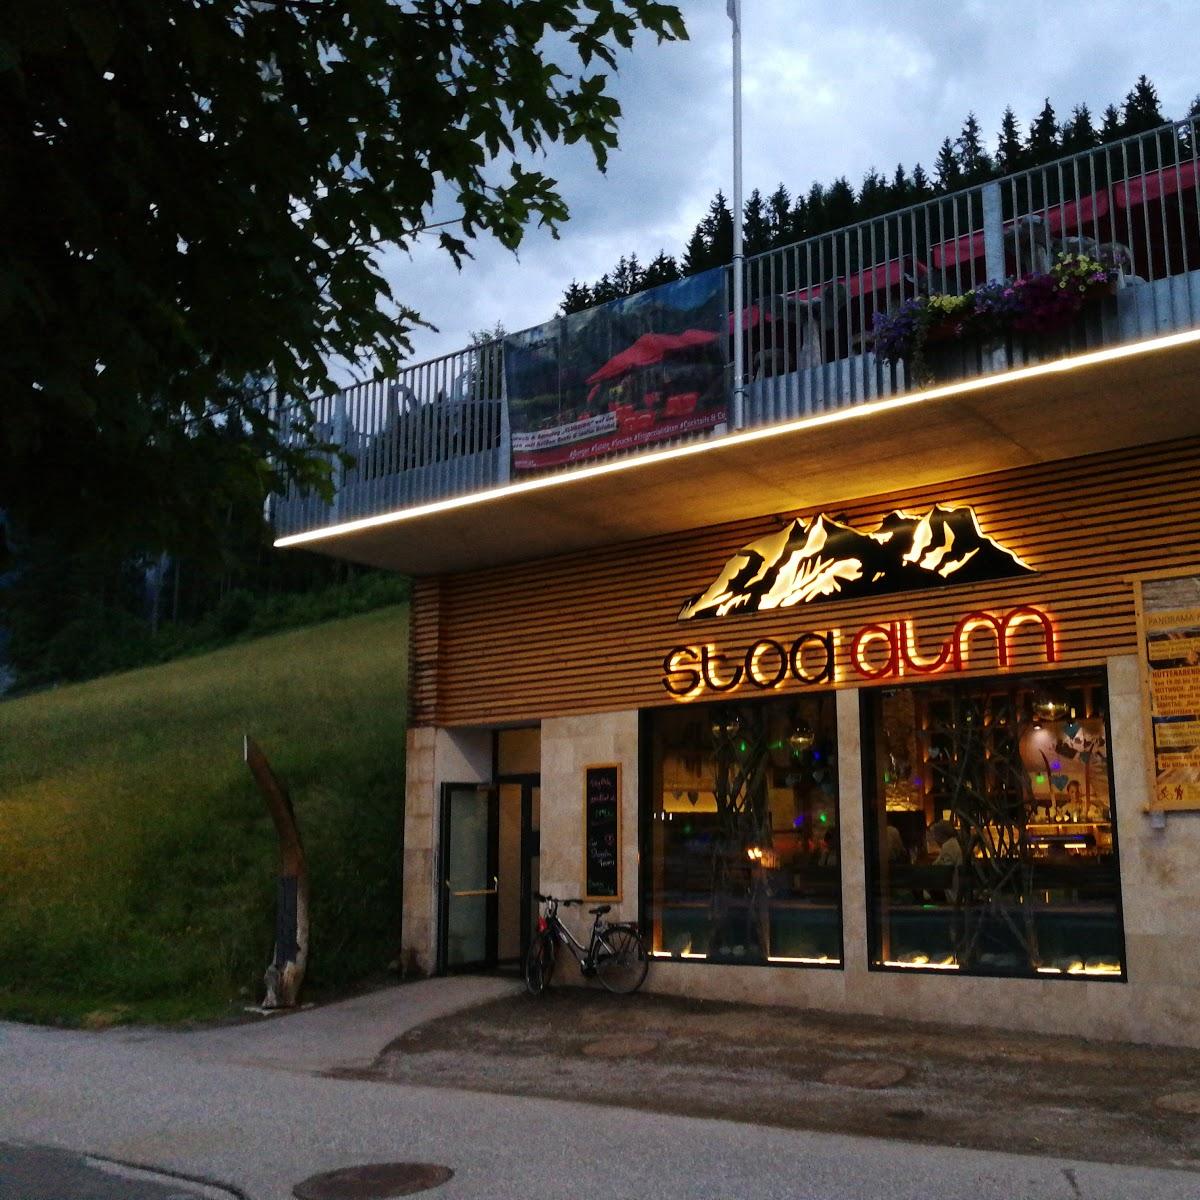 Restaurant "Stoa Alm" in Werfenweng